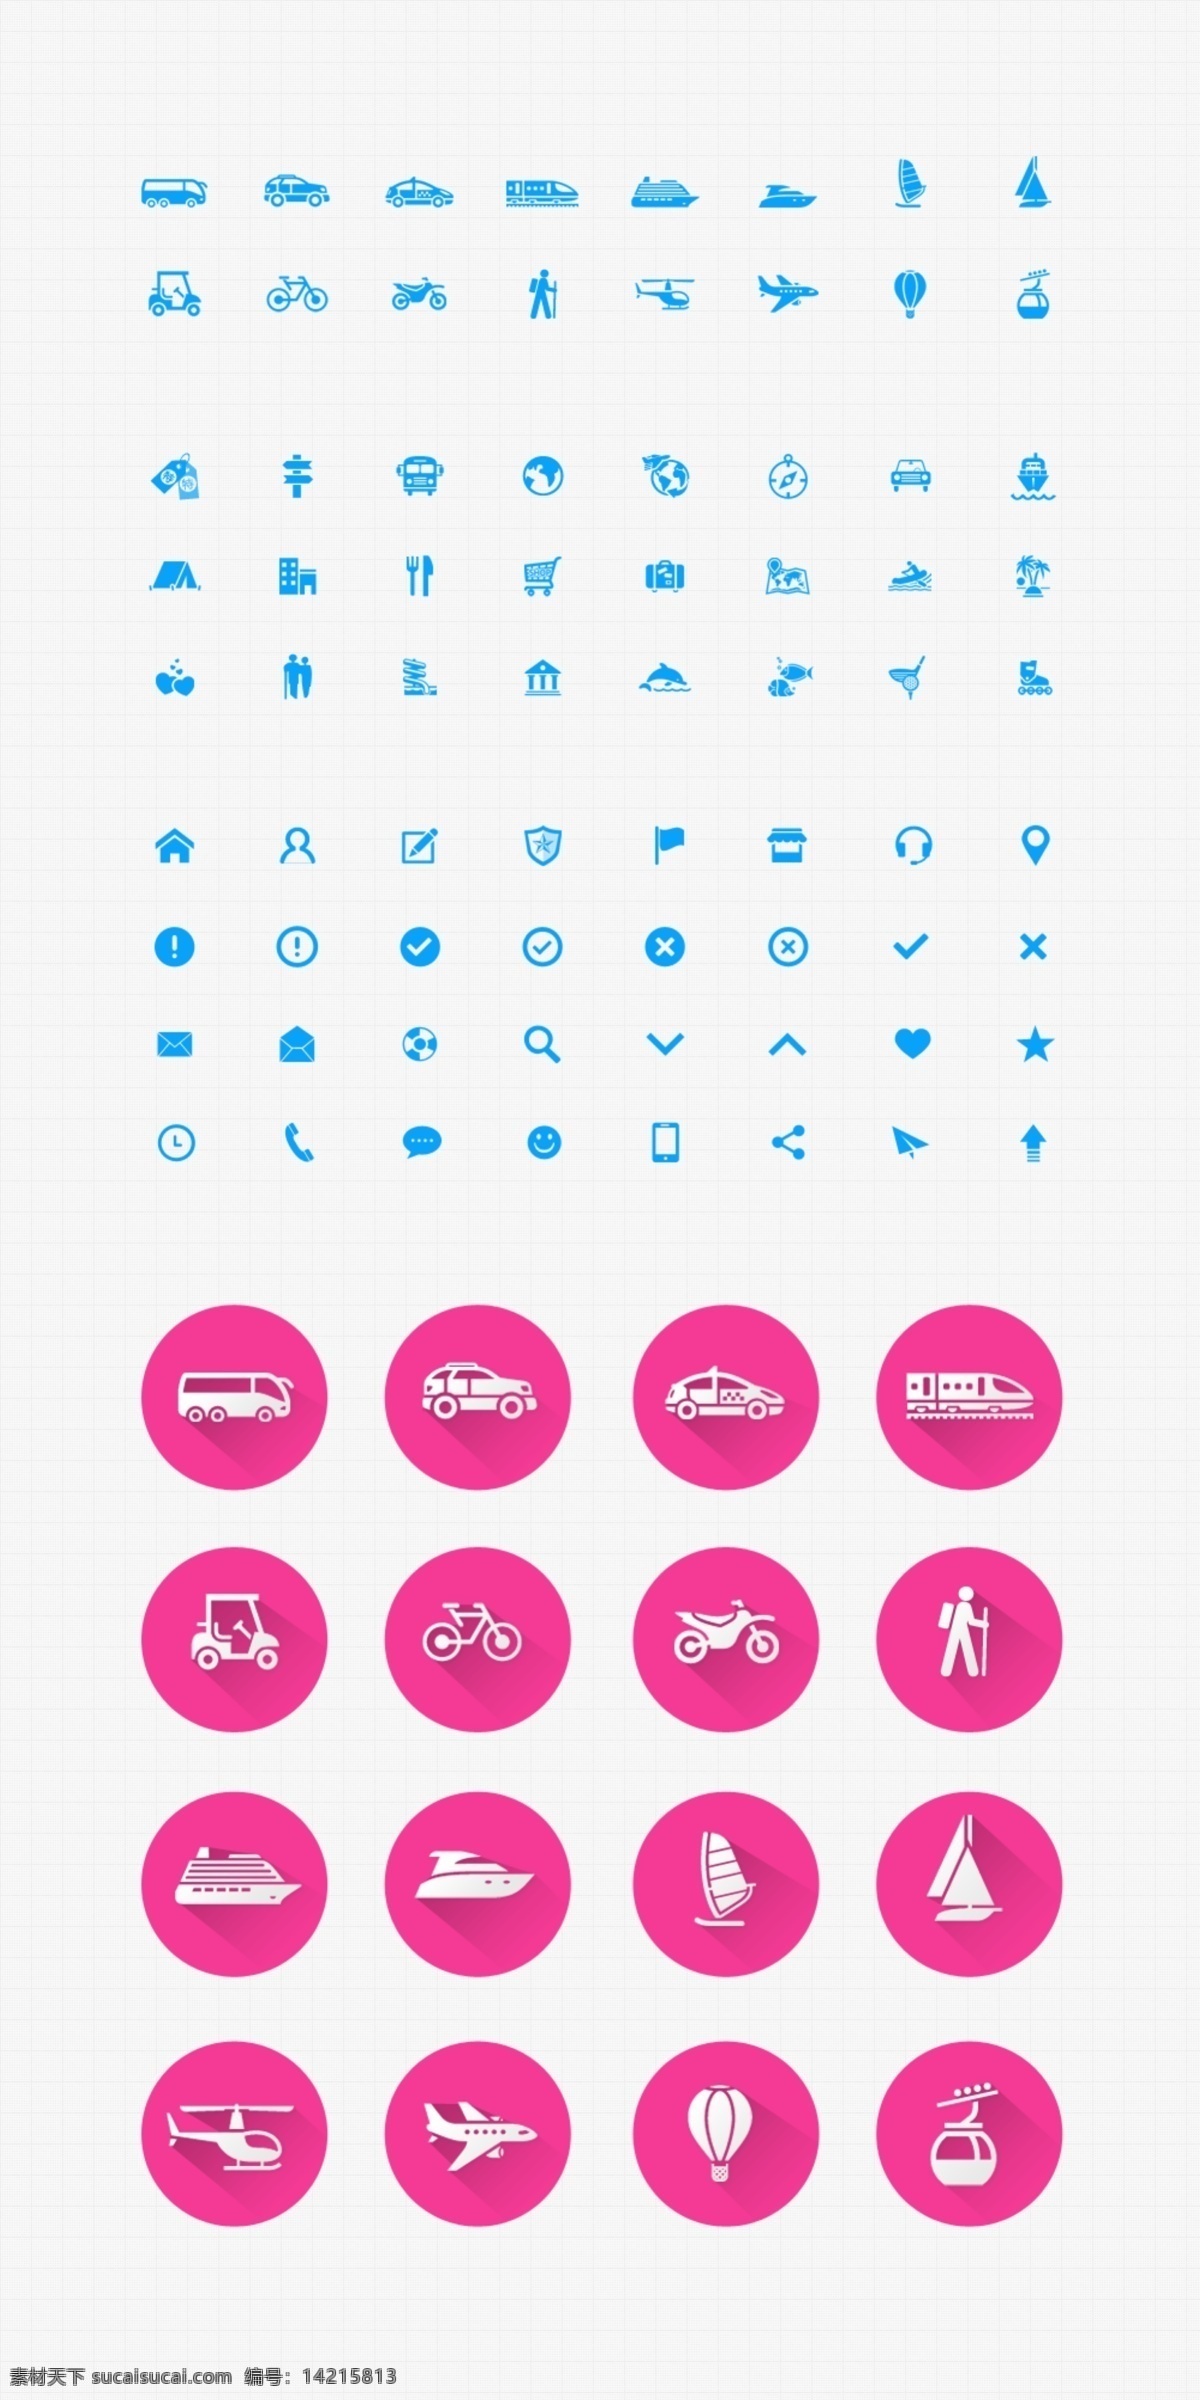 旅游 行业 图标 icons 交通工具 出游方式